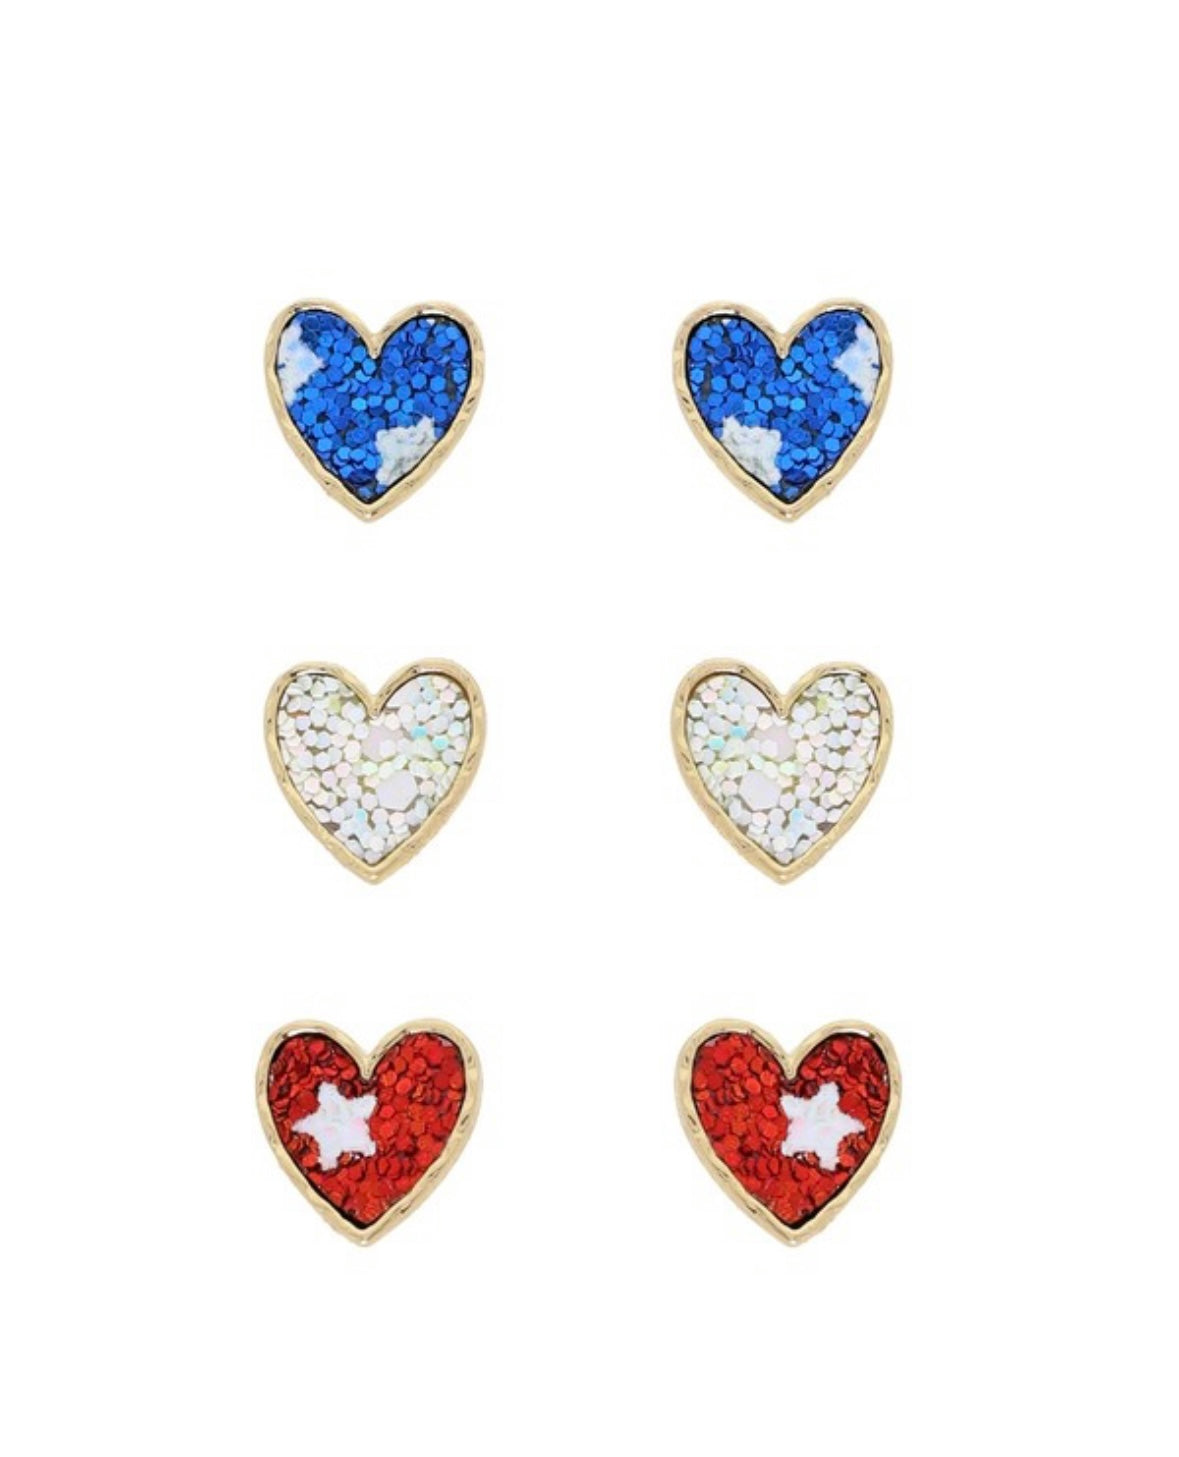 Red/White/Blue Heart Earrings